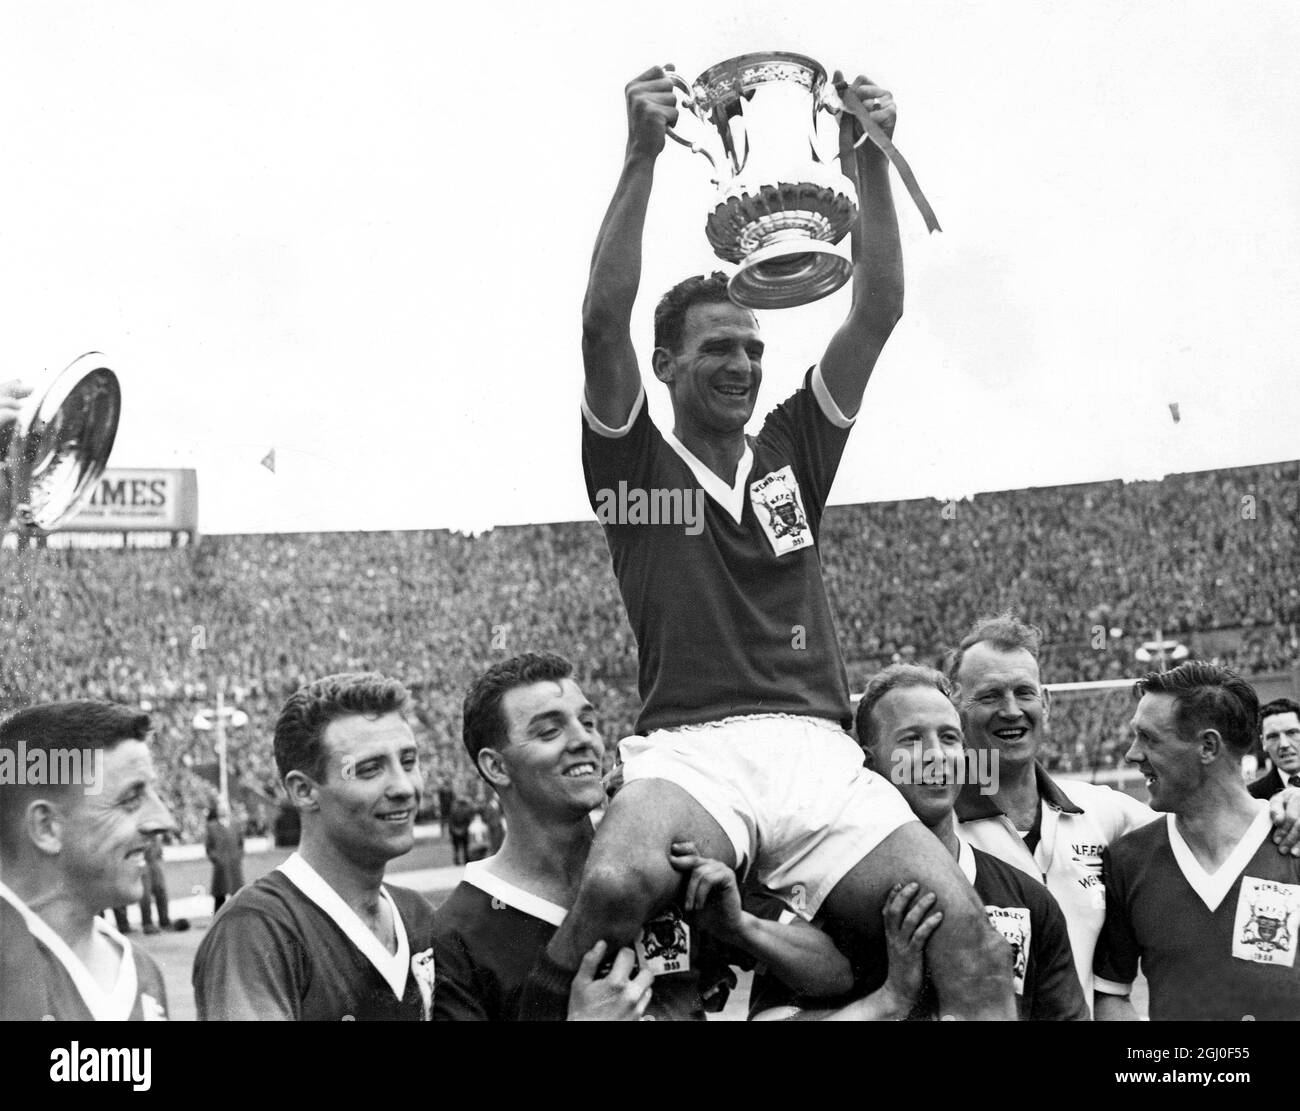 1959 FA Cup Finale Nottingham Forest gegen Luton Town Jack Burkitt der Kapitän des Nottingham Forest hält stolz den FA Cup hoch, während er nach dem Sieg gegen Luton von seinen Teamkollegen geleitet wird. Mai 1959. Stockfoto